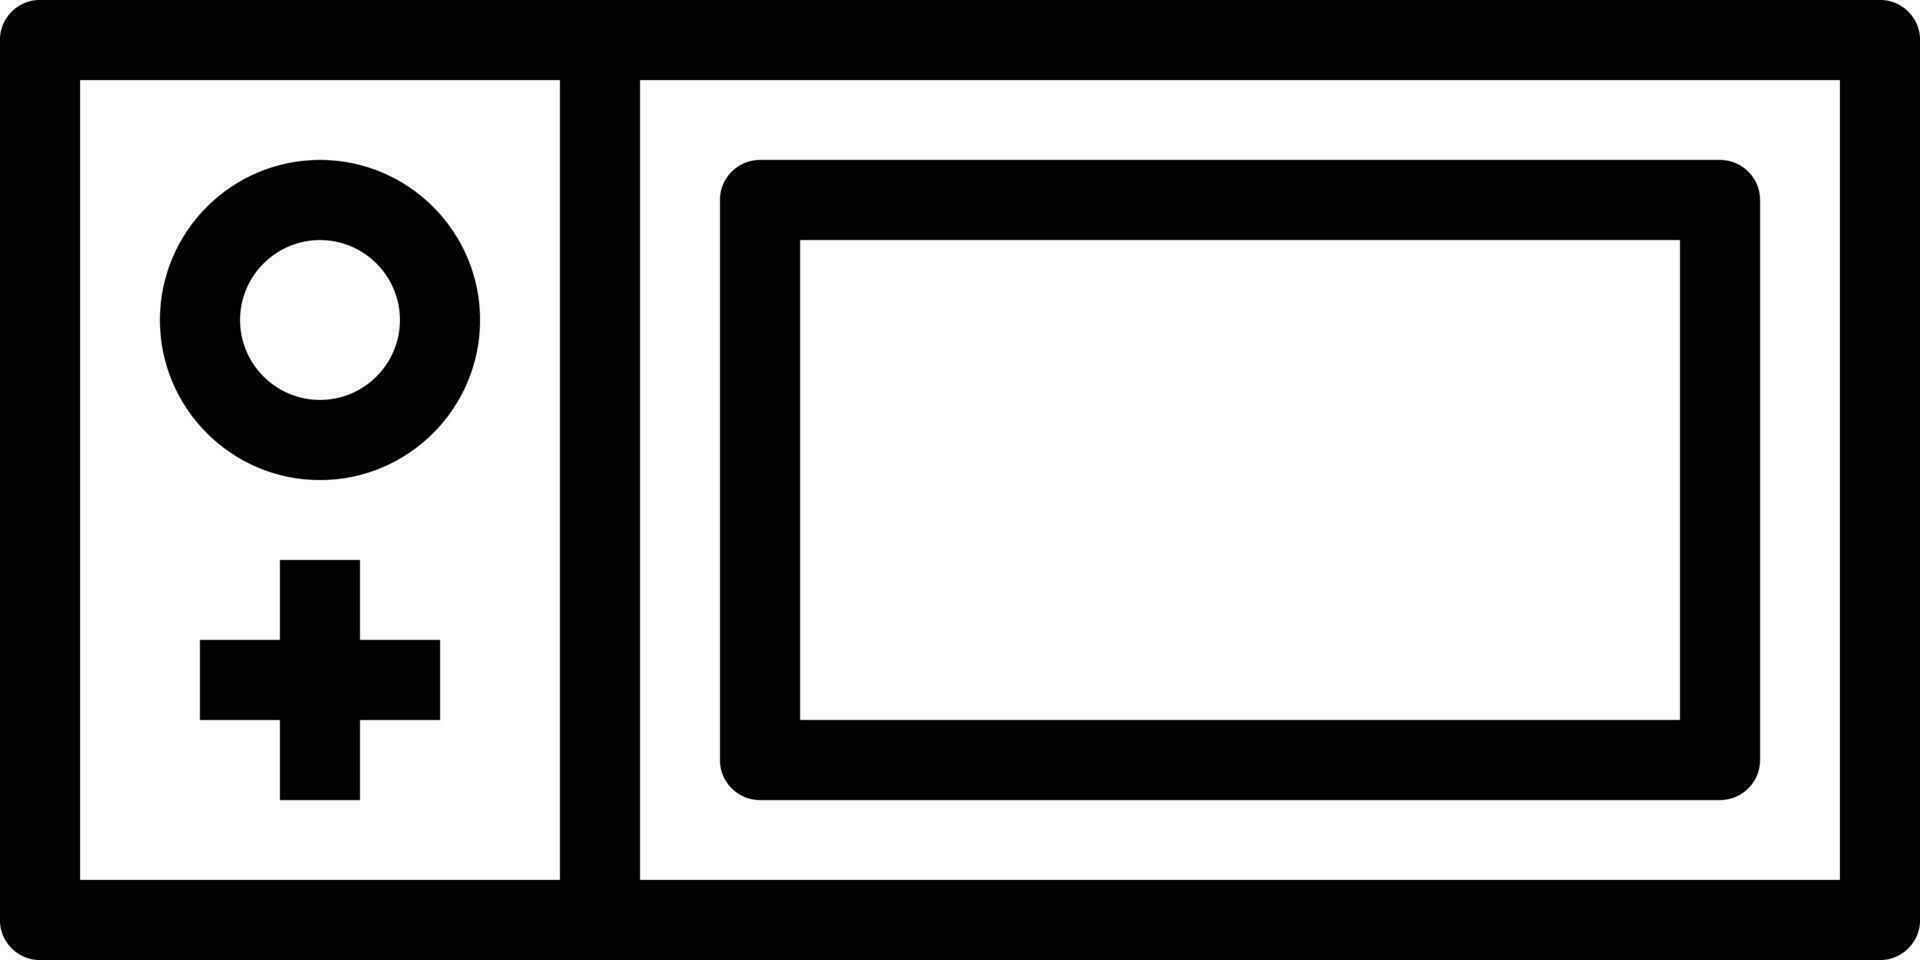 illustrazione vettoriale di videogiochi su uno sfondo. simboli di qualità premium. icone vettoriali per il concetto e la progettazione grafica.